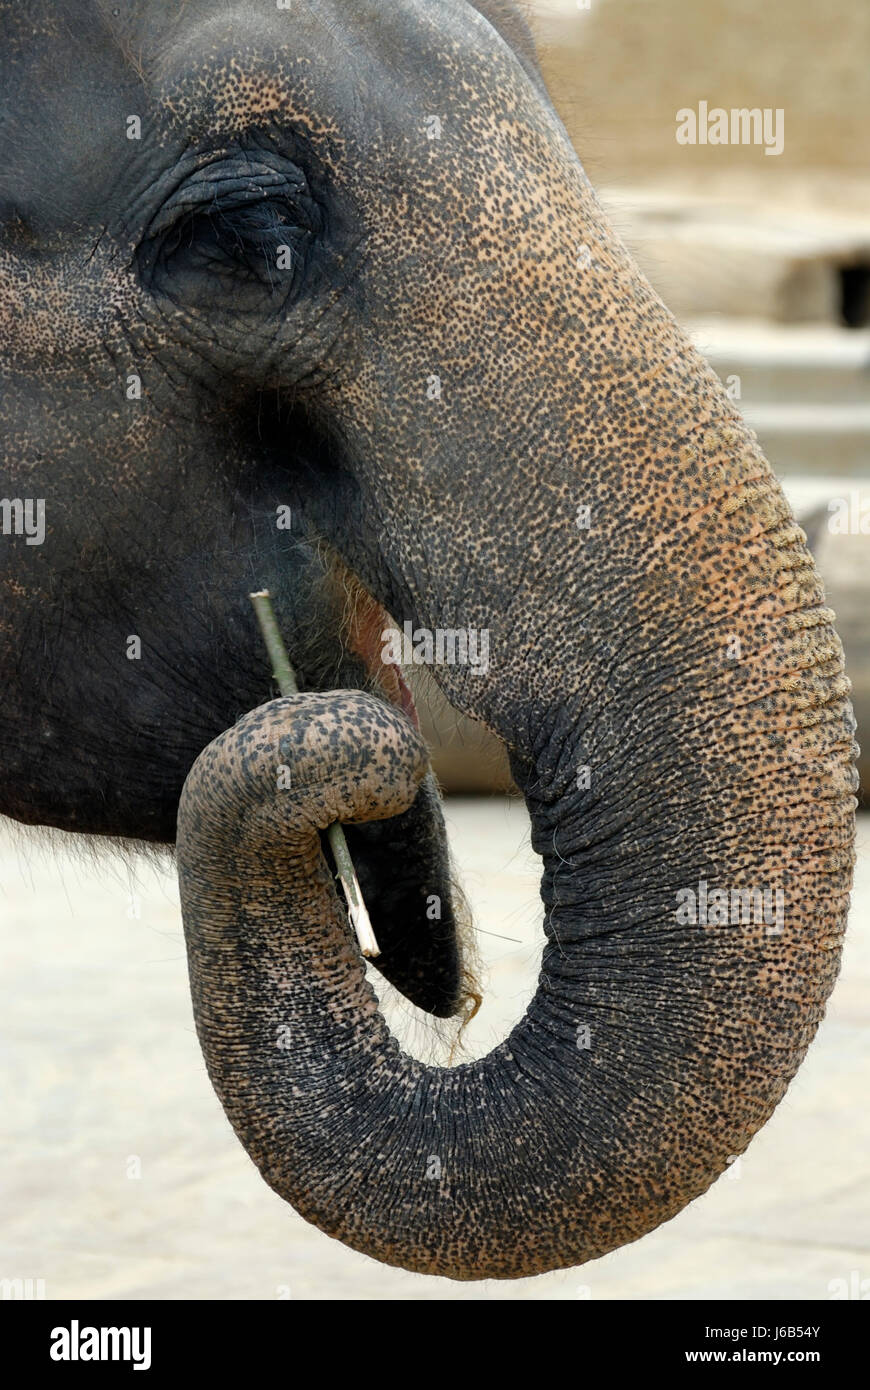 animal elephant to gorge engulf devour proboscis crooked warped hunchbacked Stock Photo